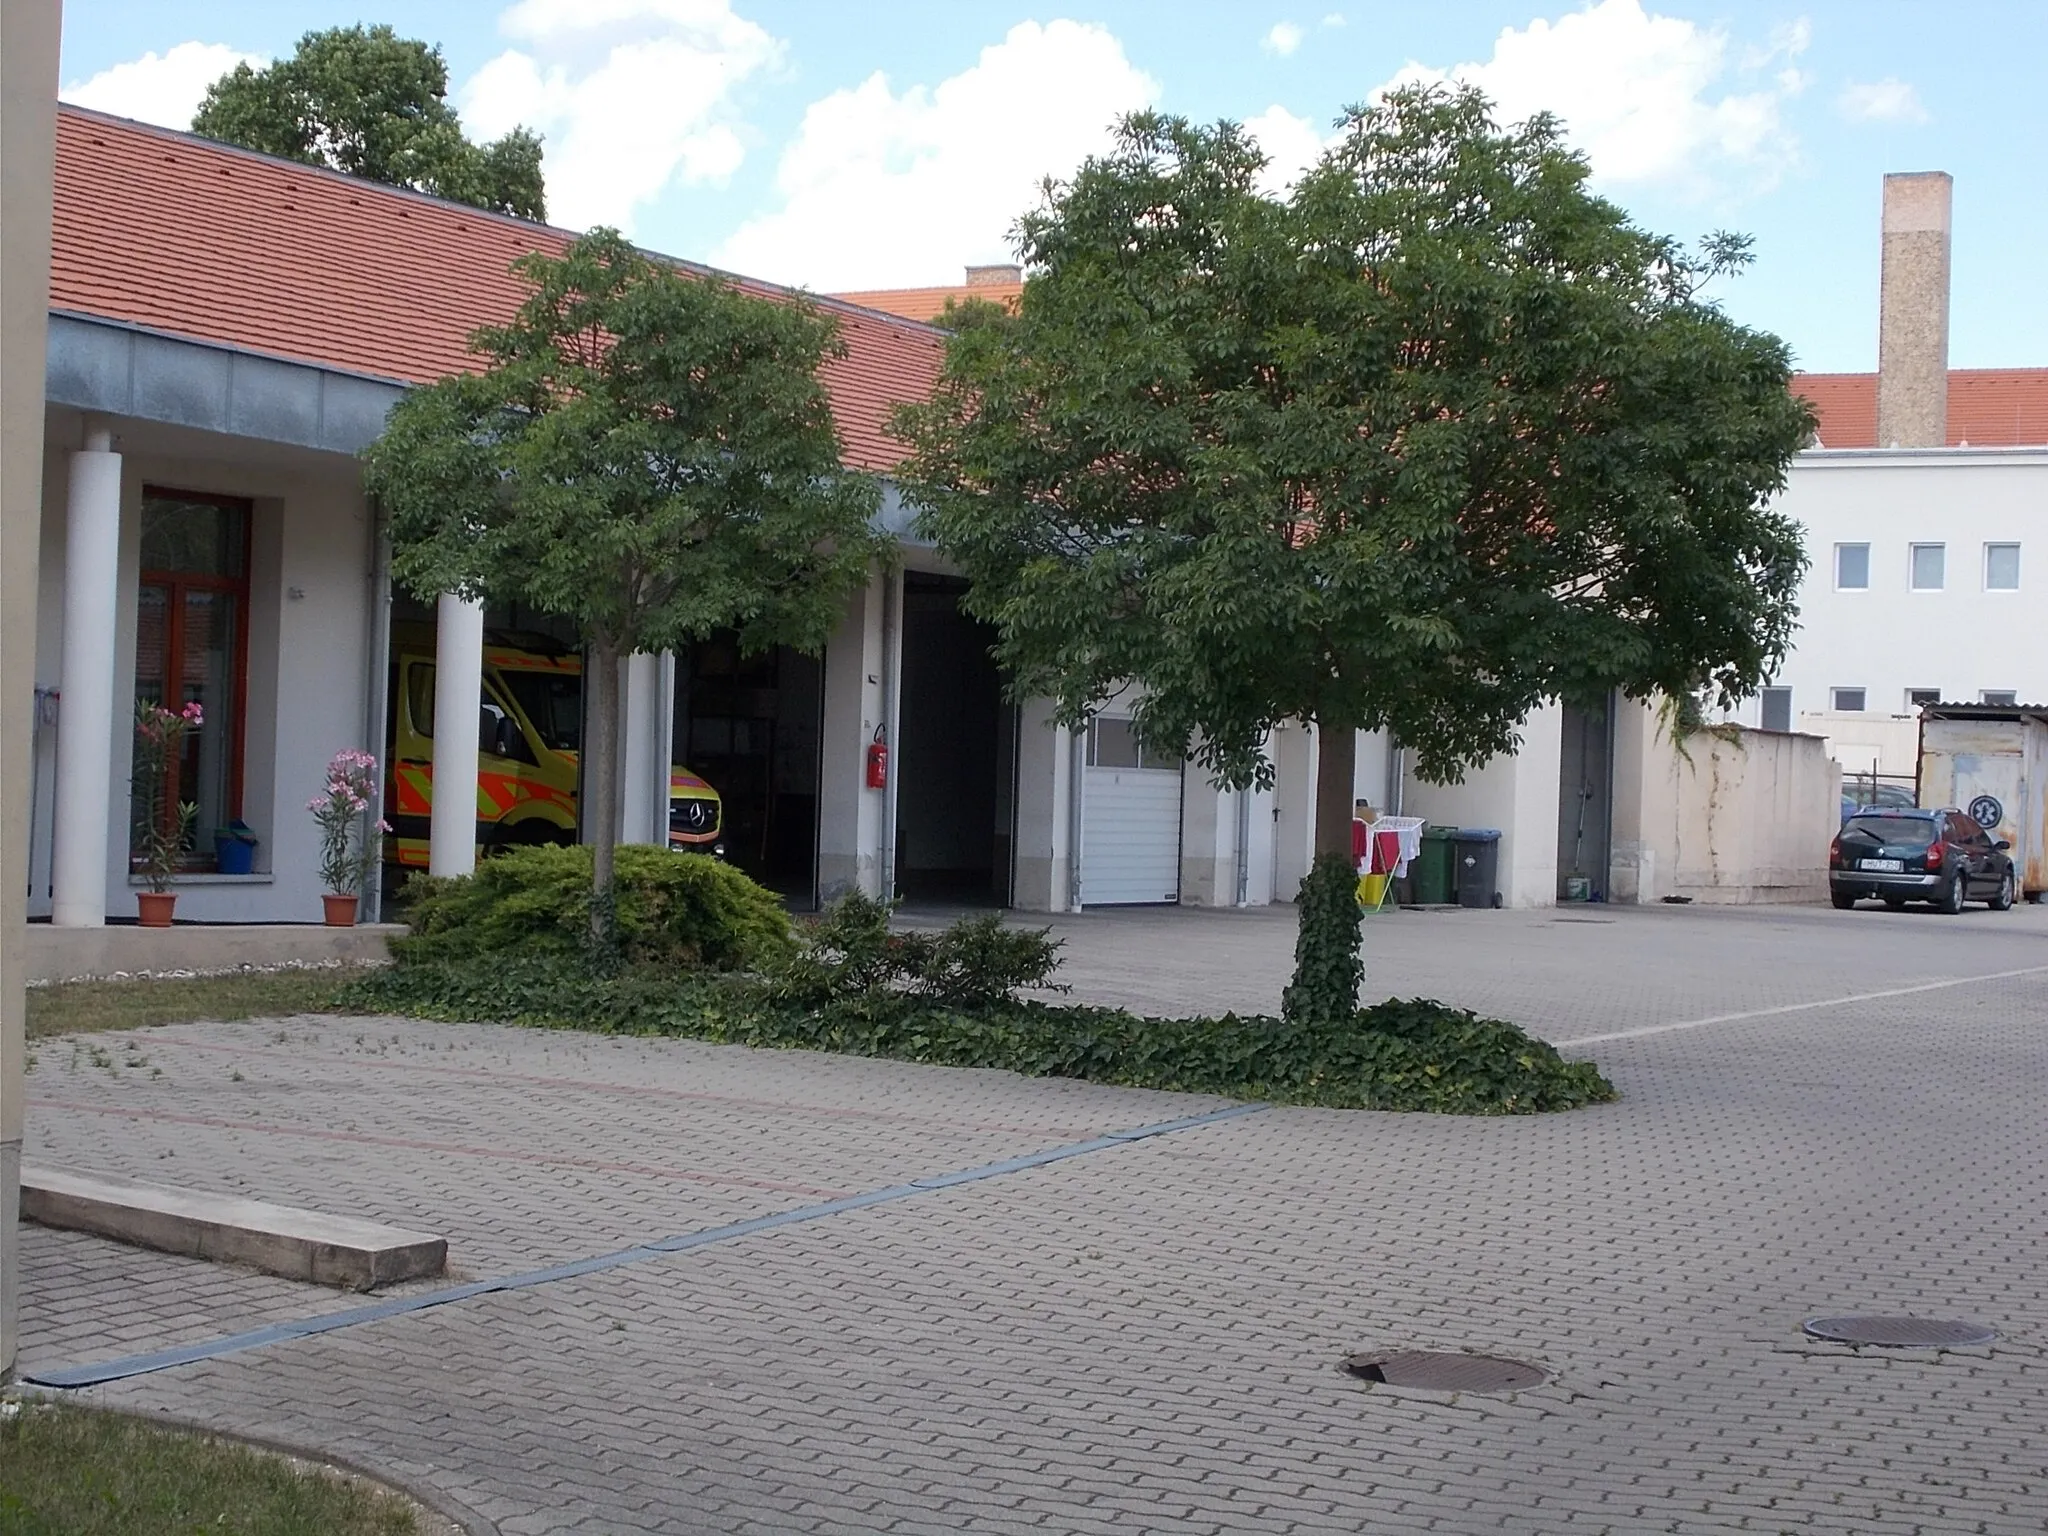 Photo showing: : Ambulance station, garages. Esterházy hospital chimney at back - 12 Anna Square, Downtown, Pápa, Veszprém County, Hungary.